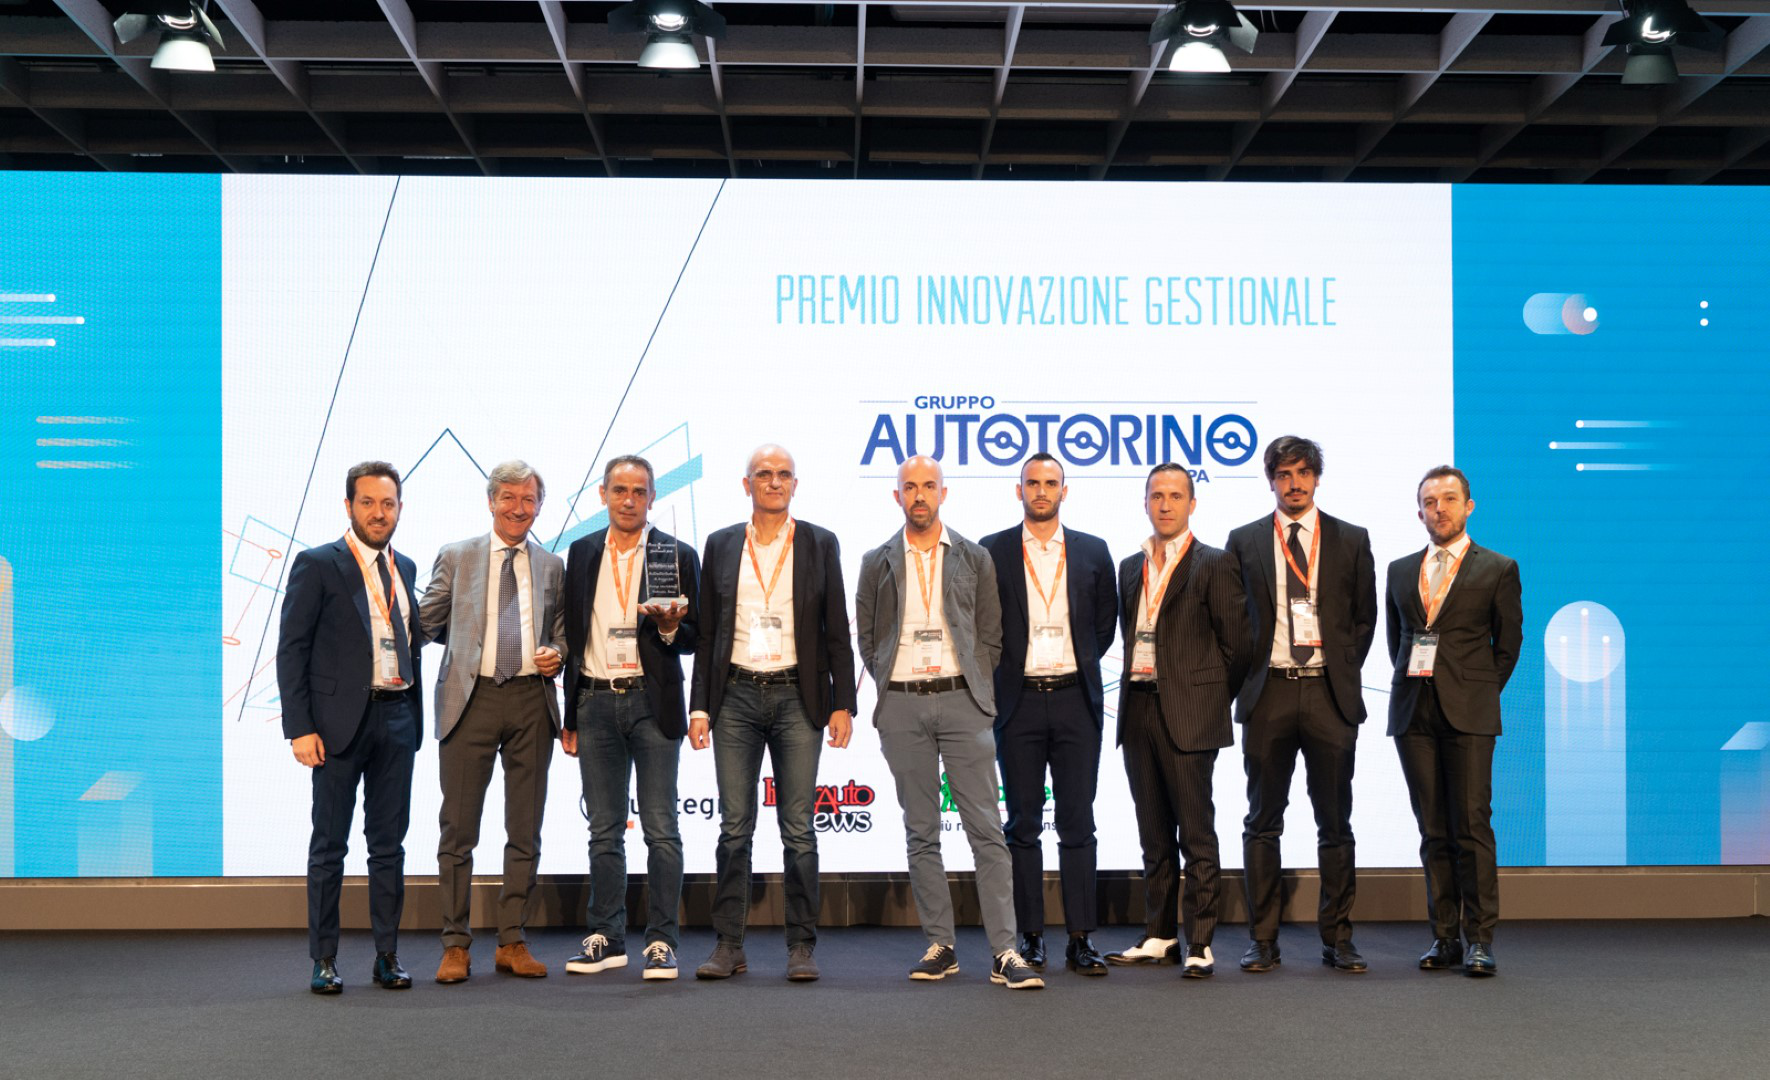 Premio Innovazione Gestionale 2018: l’Automotive Dealer Day conferisce al Gruppo Autotorino Ii riconoscimento nazionale.